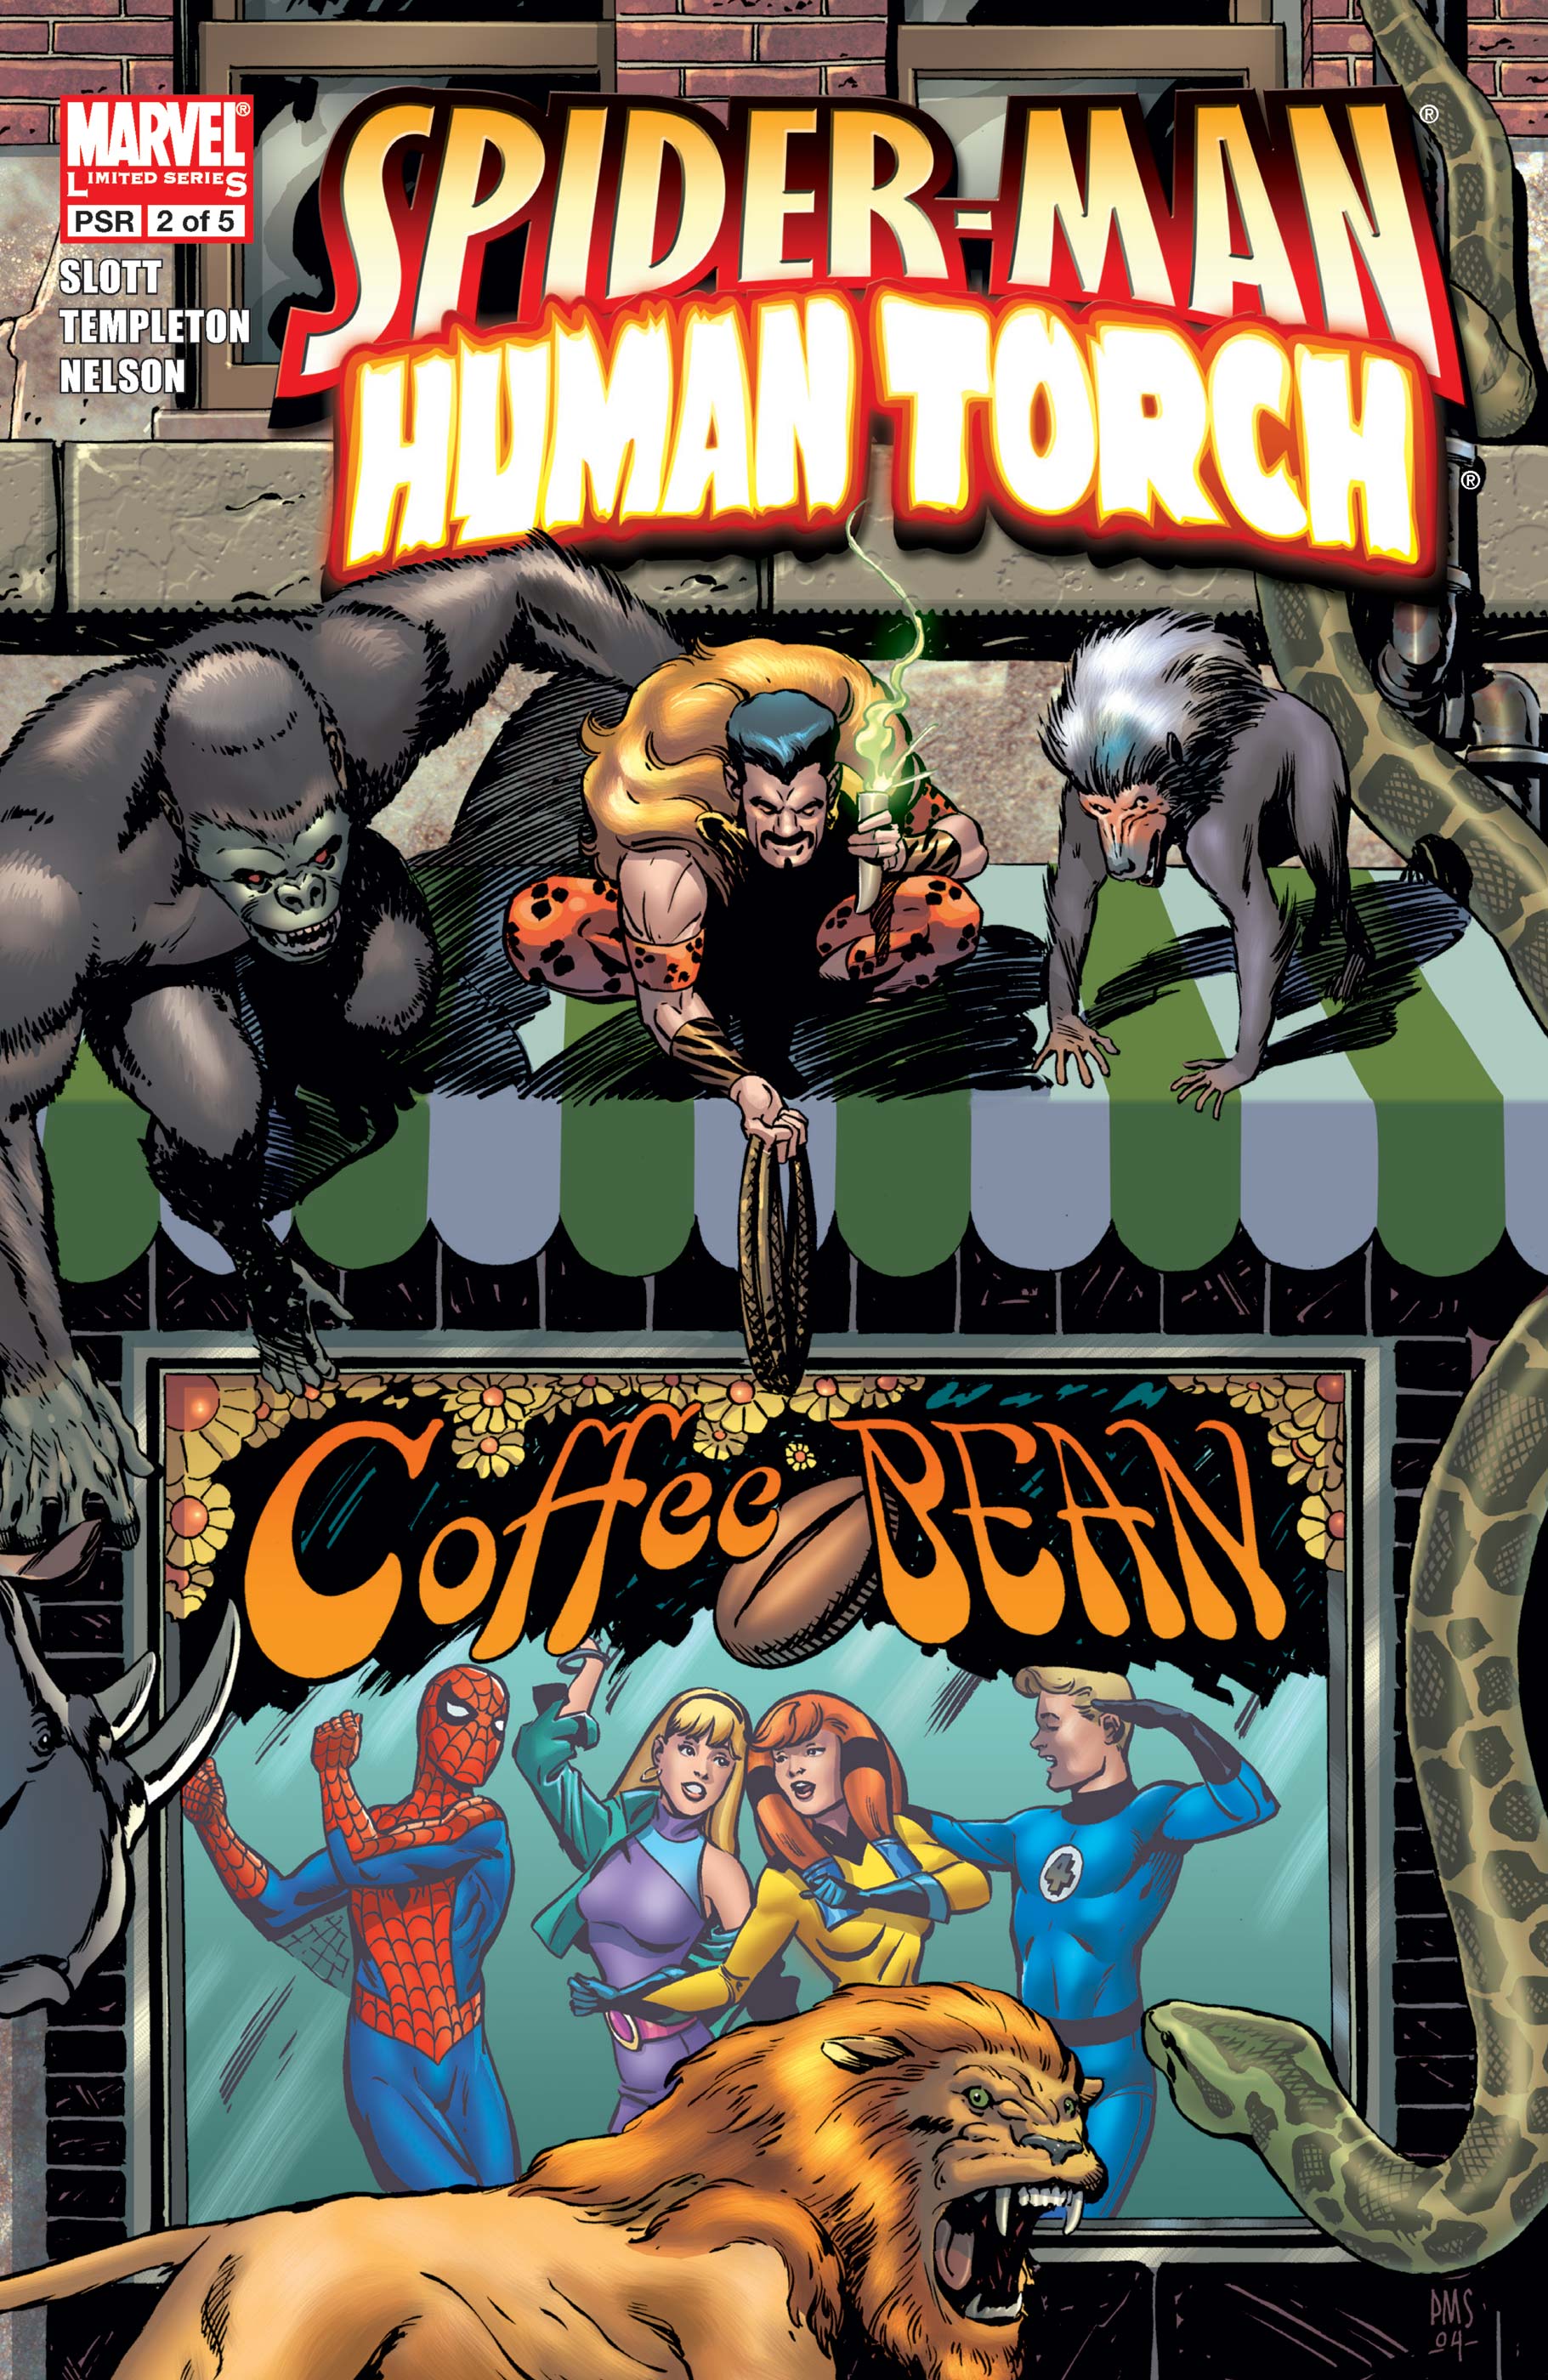 Spider-Man/Human Torch (2005) #2